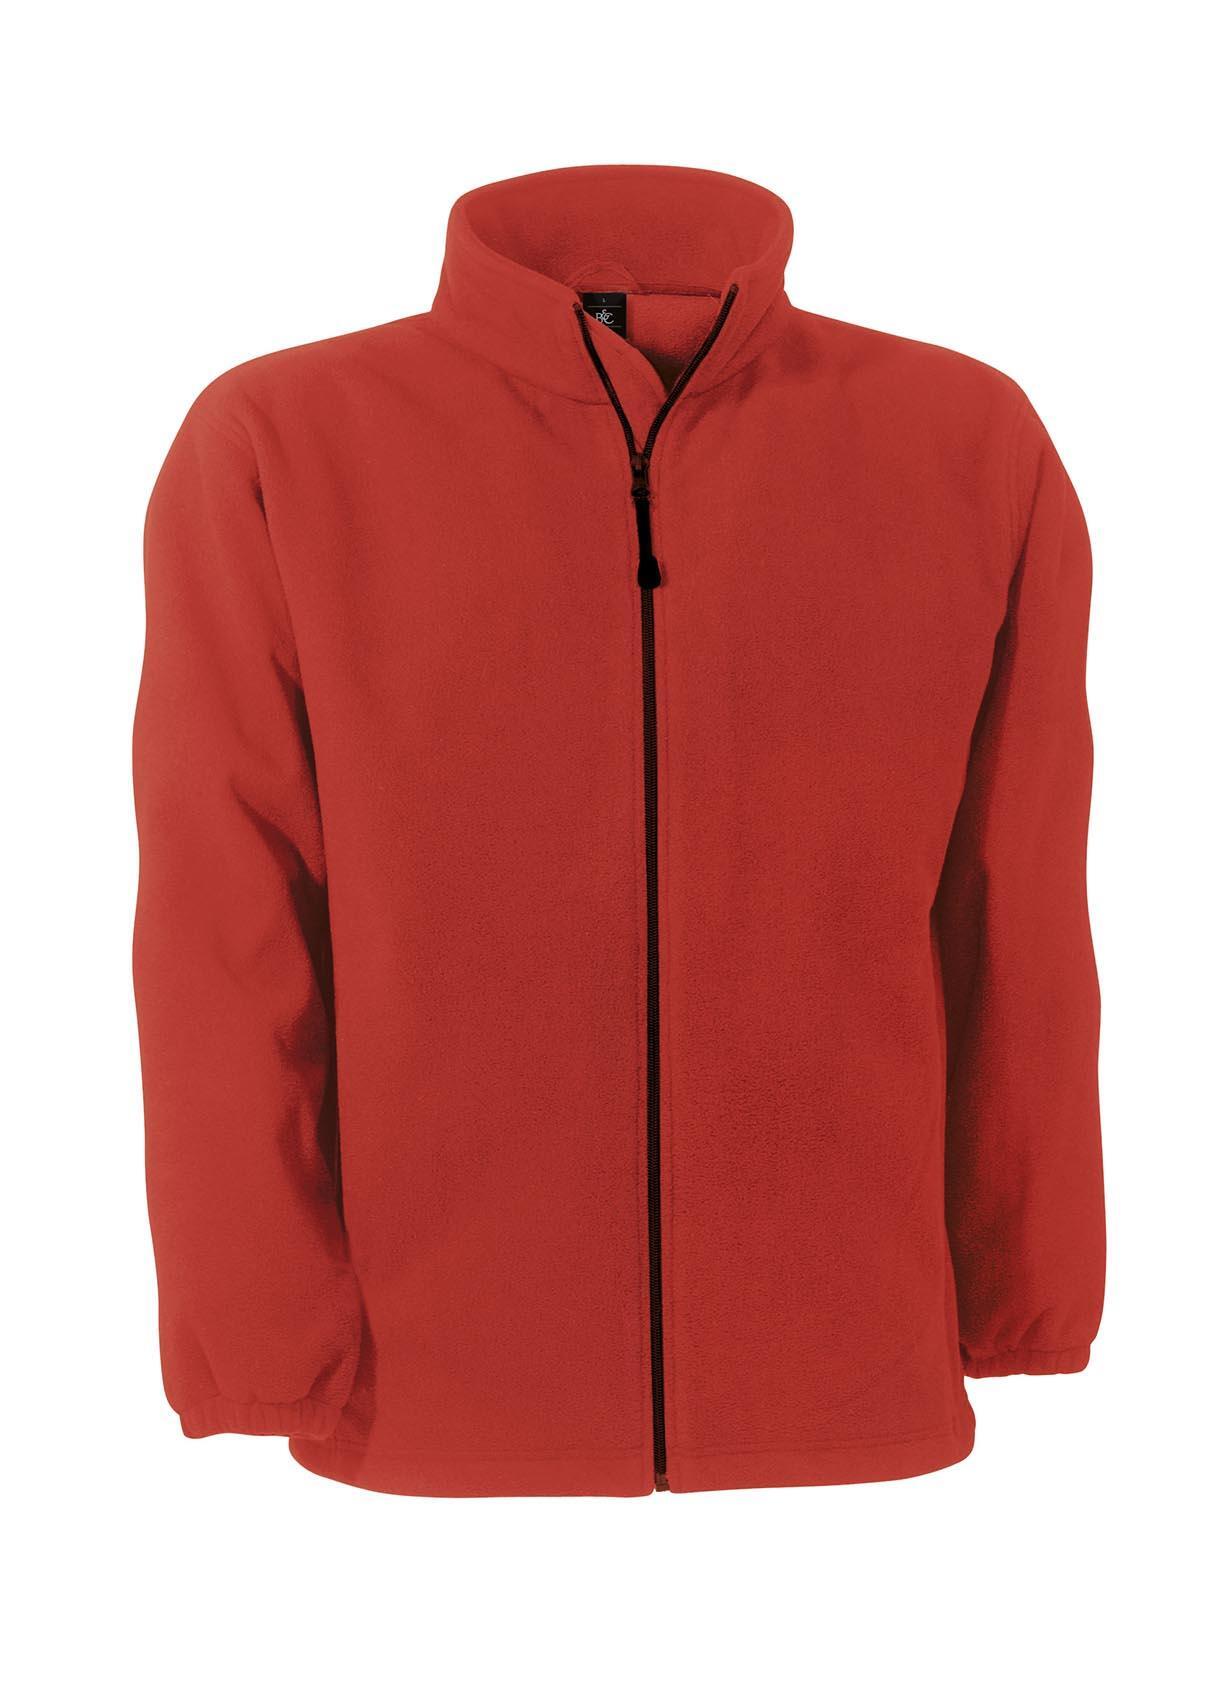 Fleece jas voor mannen rood windproof en waterbestendig